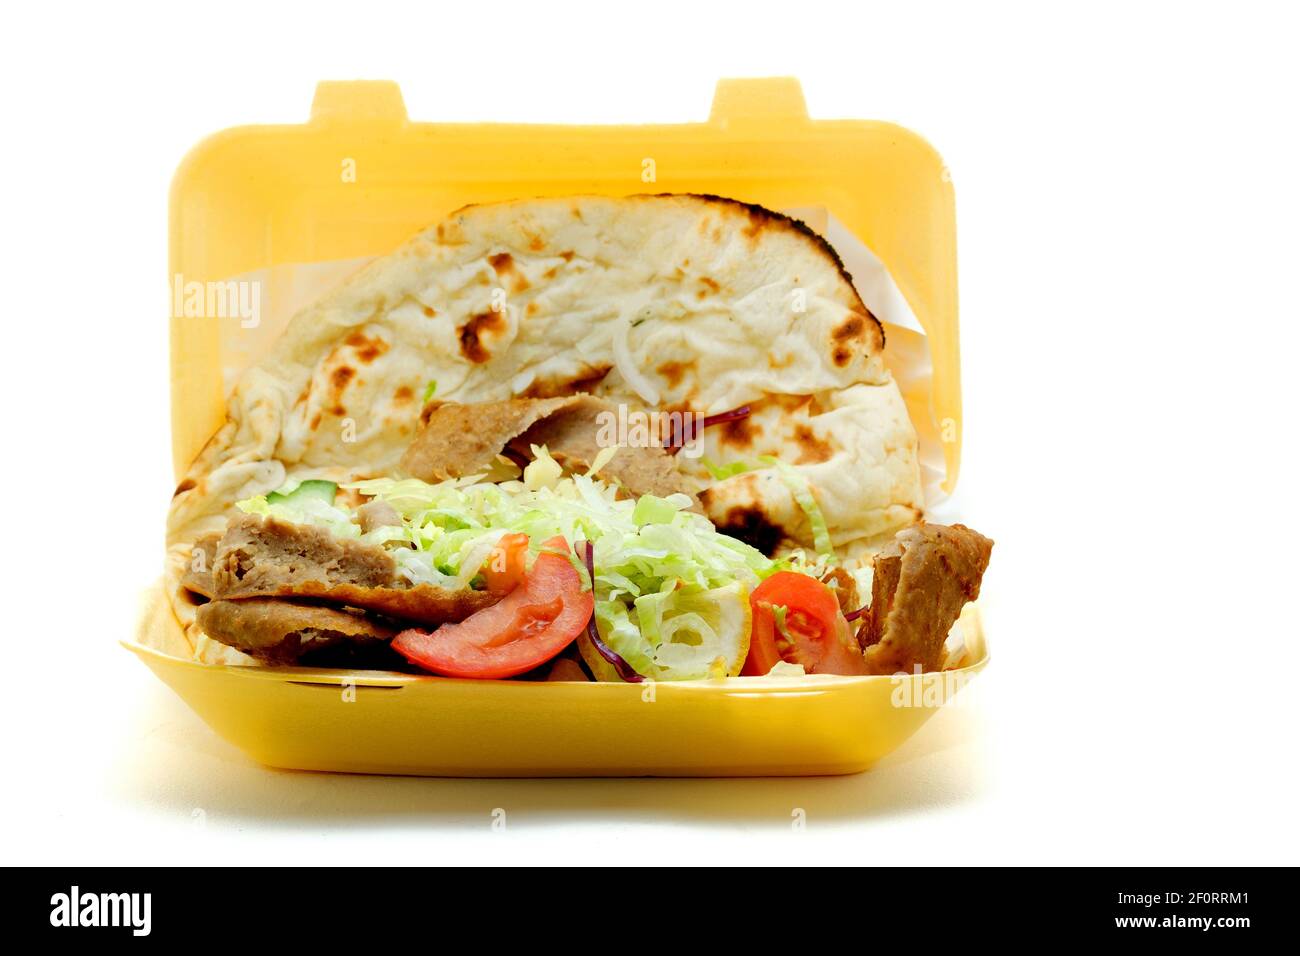 Un Doner Kebab para llevar, o kebab donador, servido con ensalada y envuelto en un pan Nan. El kebab se ha vendido en un contenedor de poliestireno desechable. Foto de stock